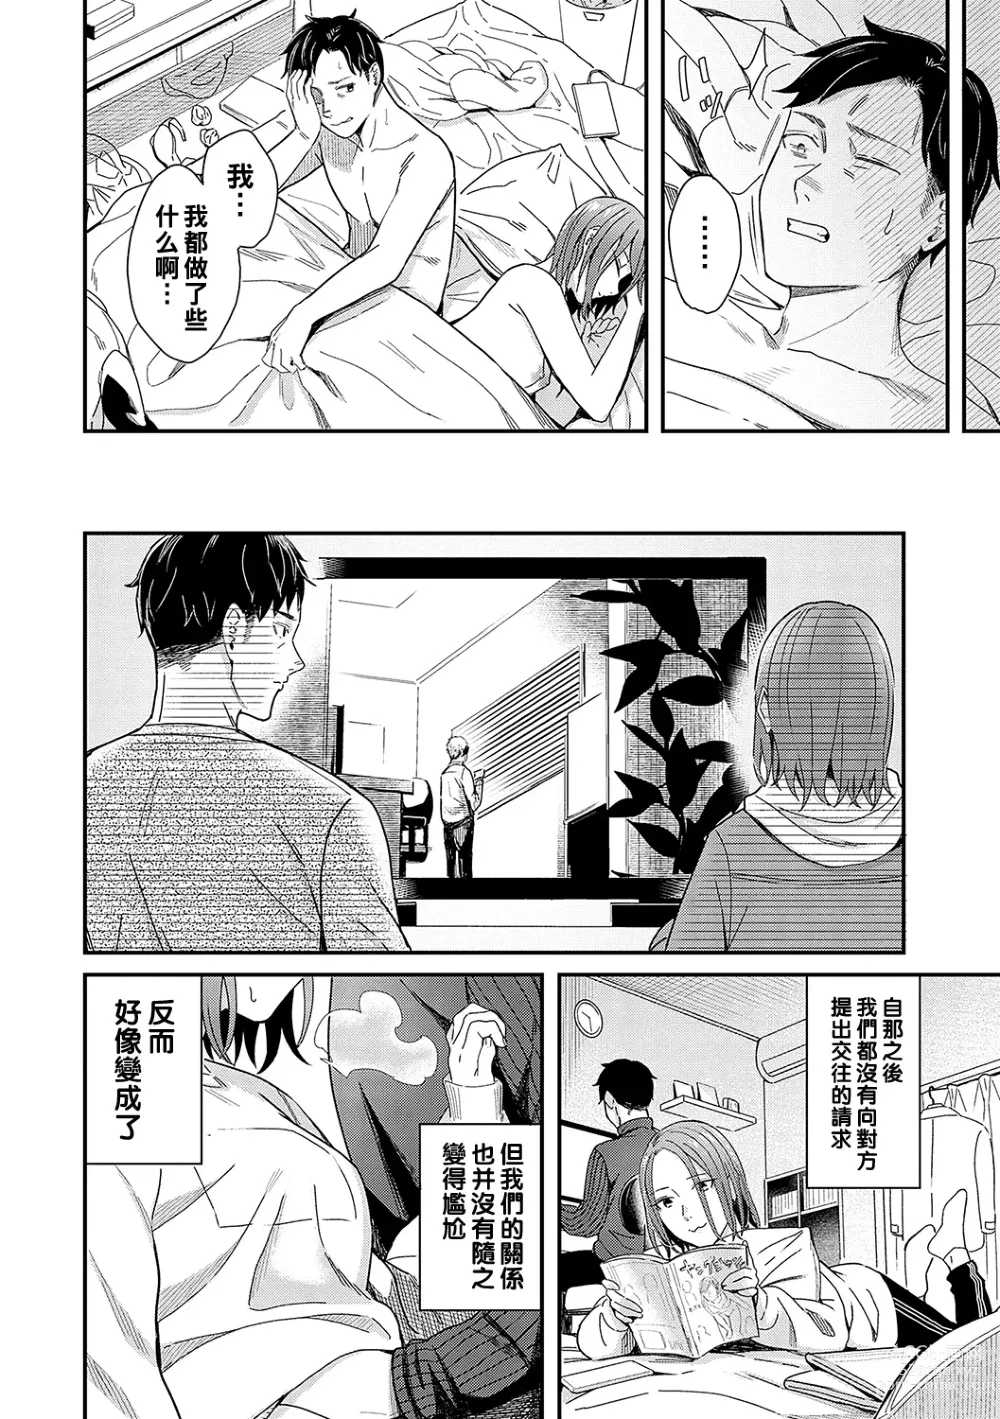 Page 8 of manga Kudaranai Renai Eiga no You ni... - Like a crappy romance movie...